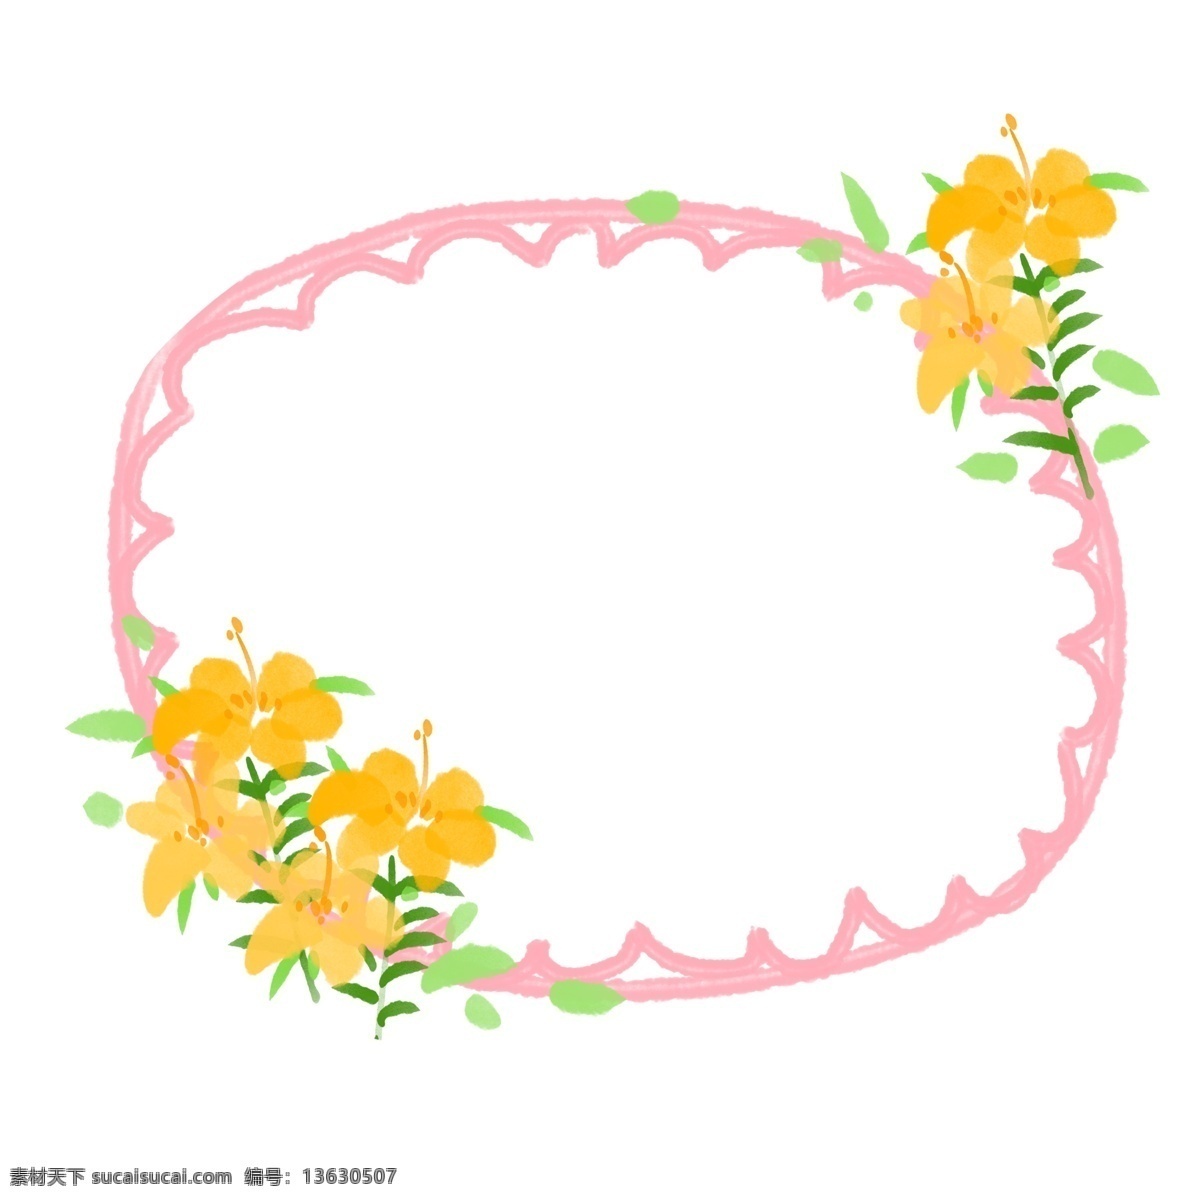 粉色 花卉 边框 插画 粉色的边框 花卉边框 创意边框 立体边框 边框装饰 边框插画 唯美的边框